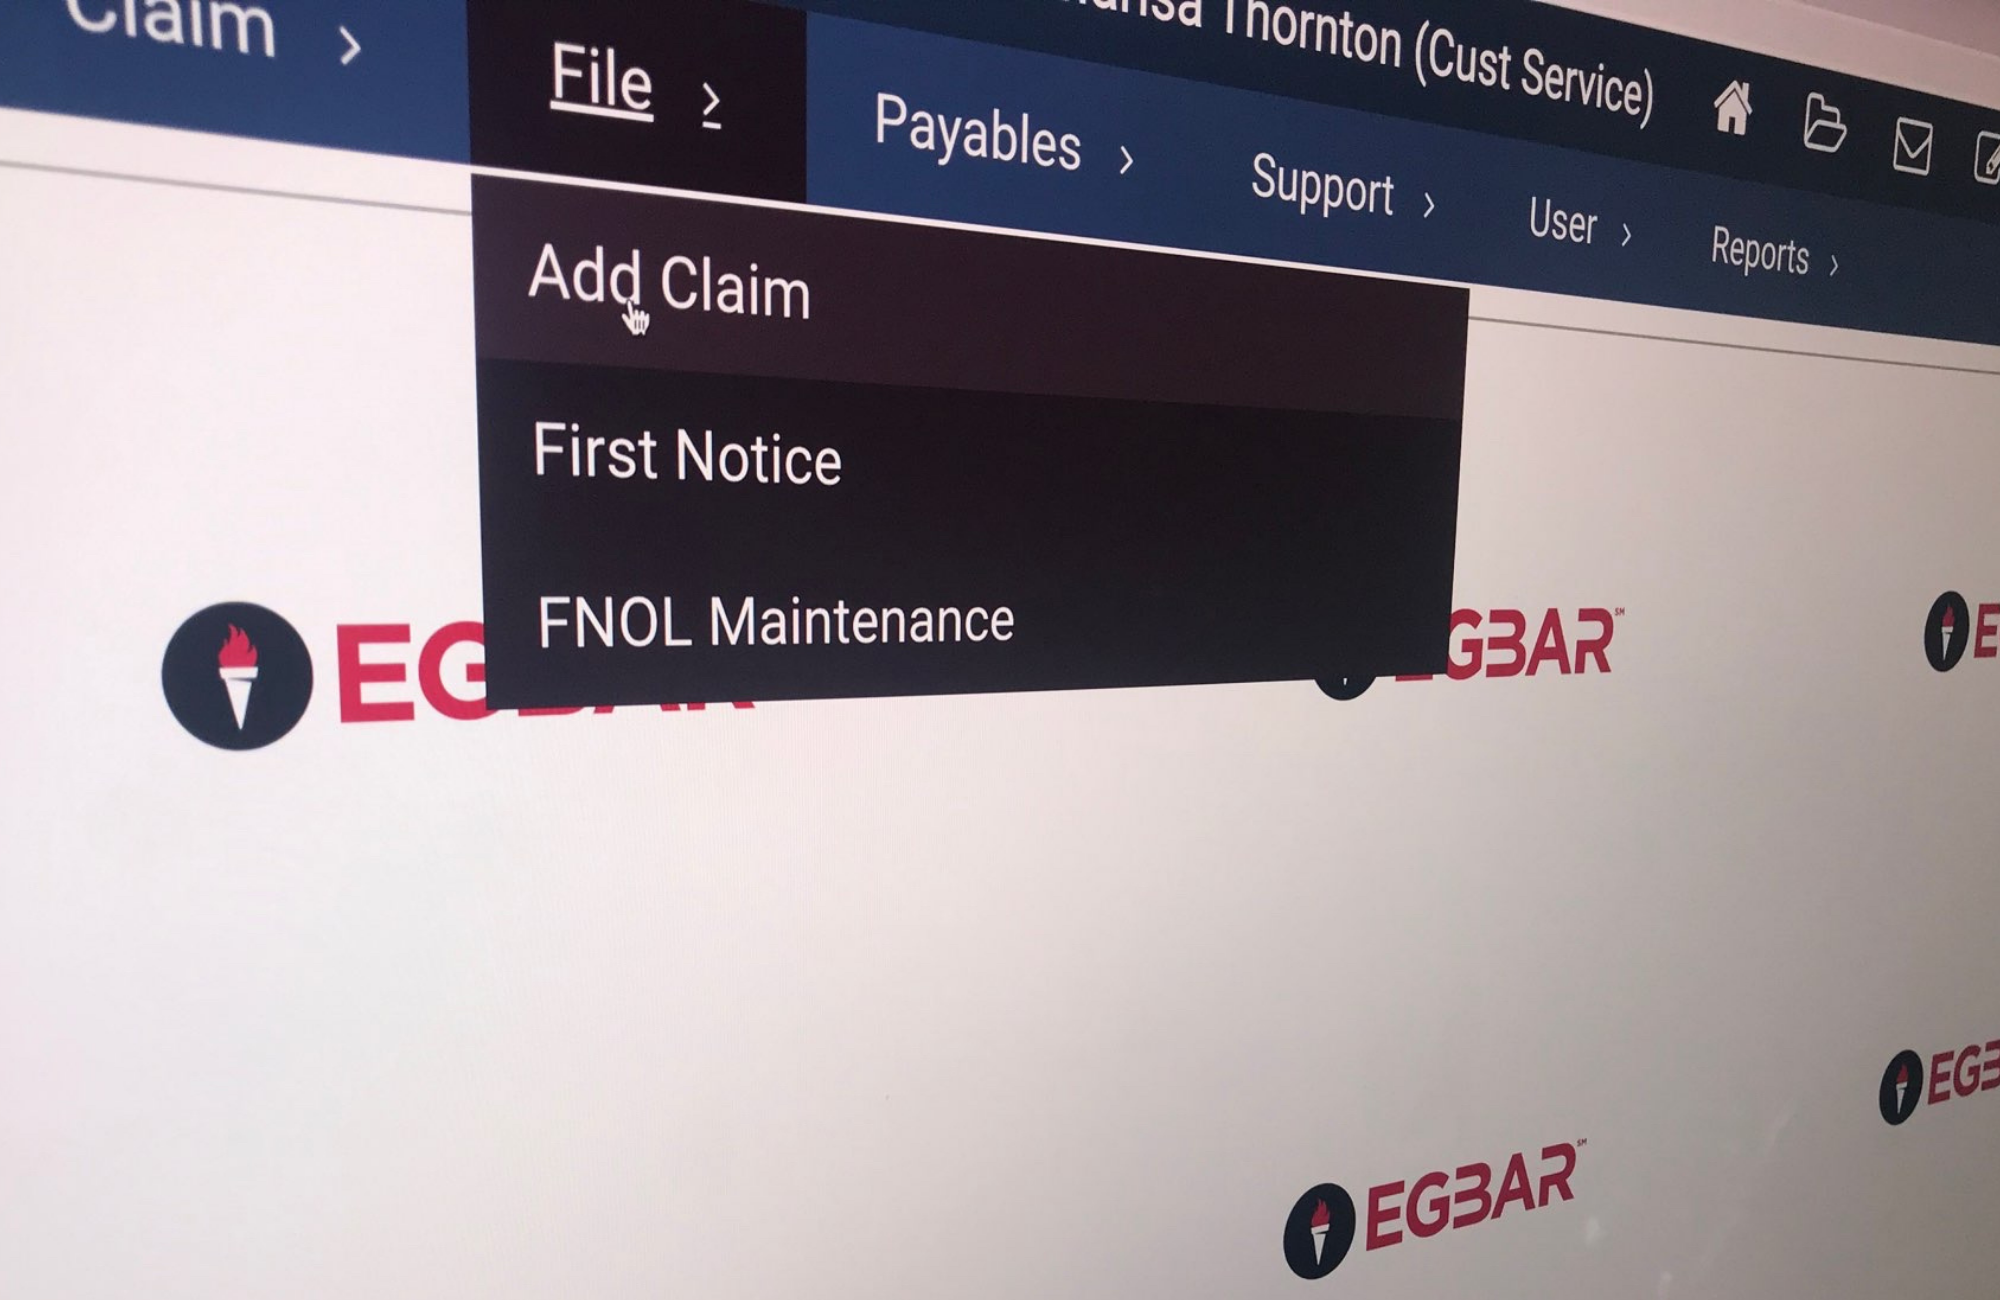 A-G Administrators EGBAR software screenshot to “Add Claim” screen.